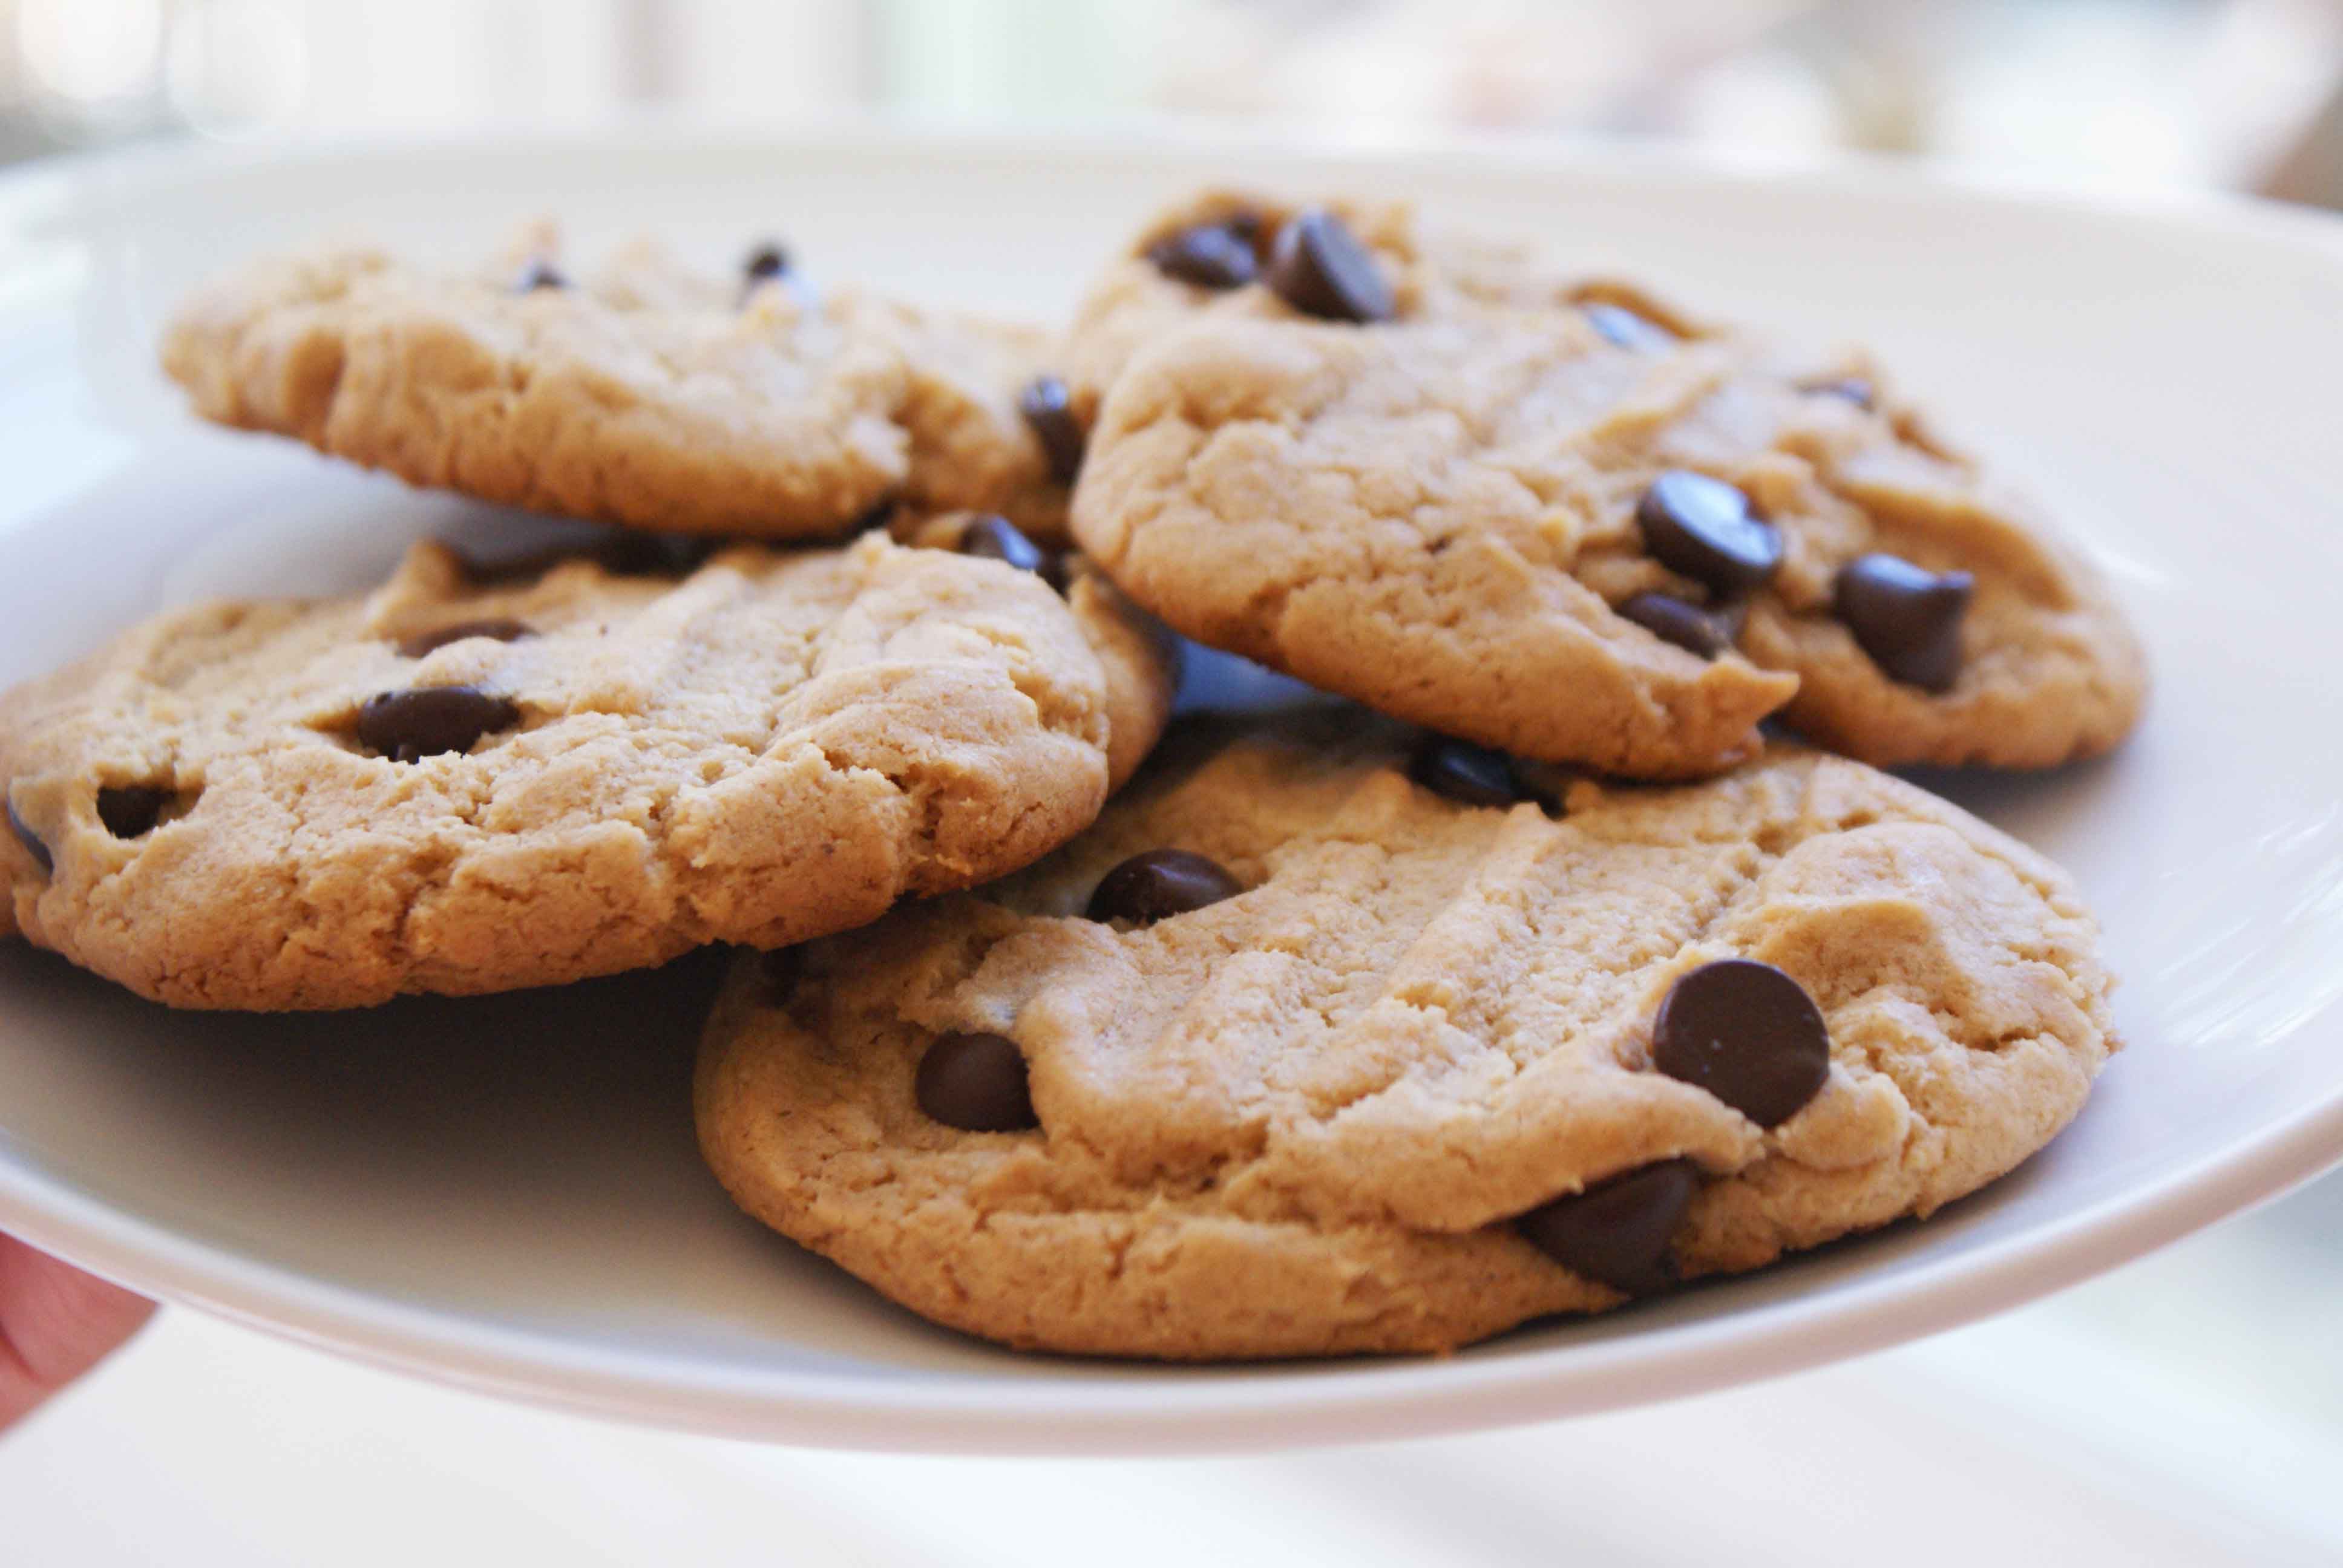 Запись cookies. Американ кукис. Американское печенье кукис. Печёние. Красивые печеньки.